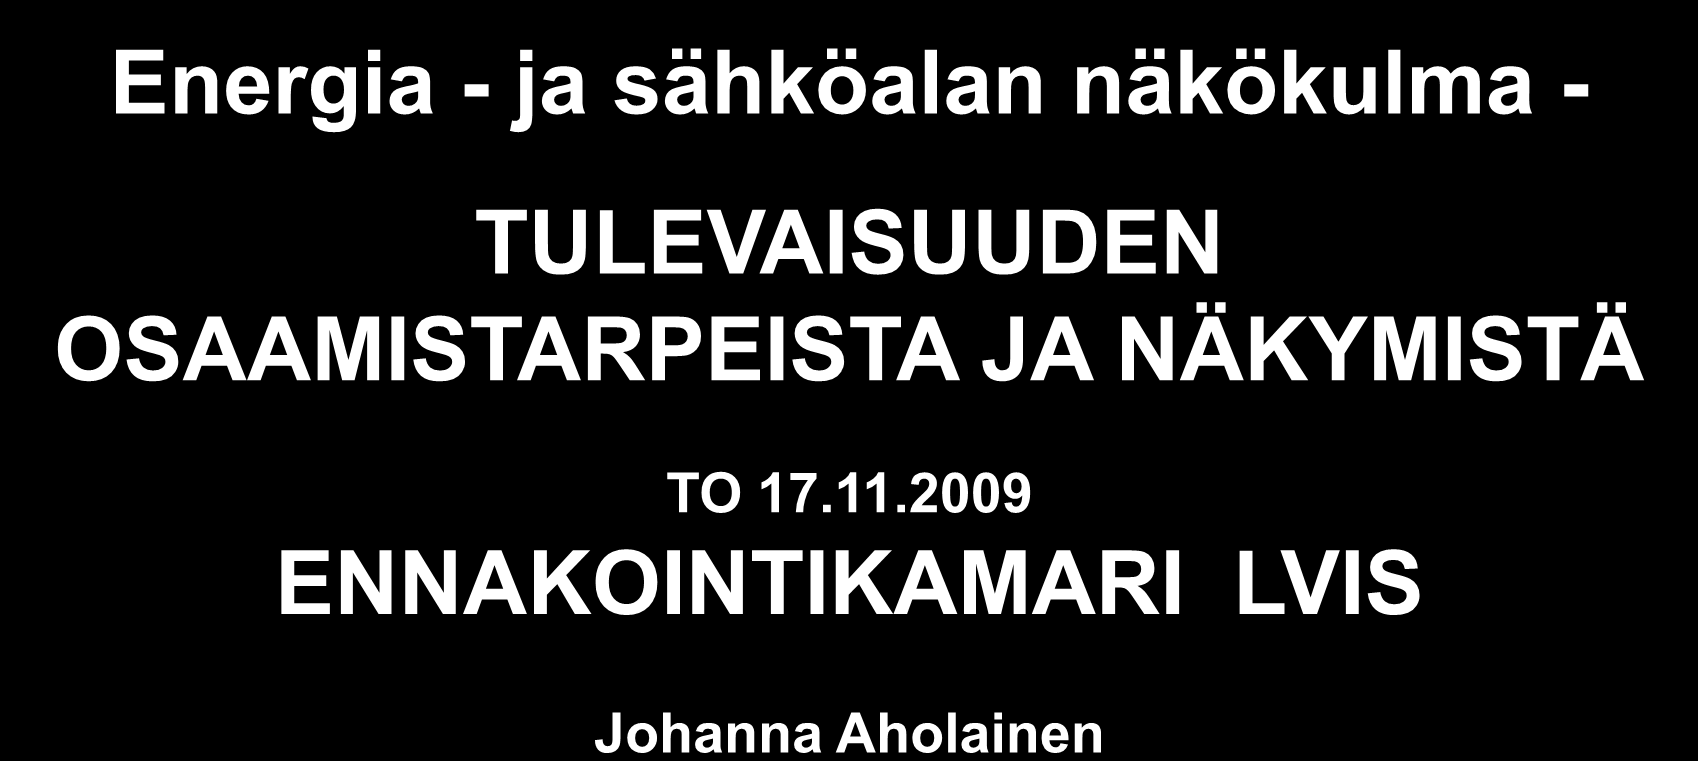 JA NÄKYMISTÄ TO 17.11.